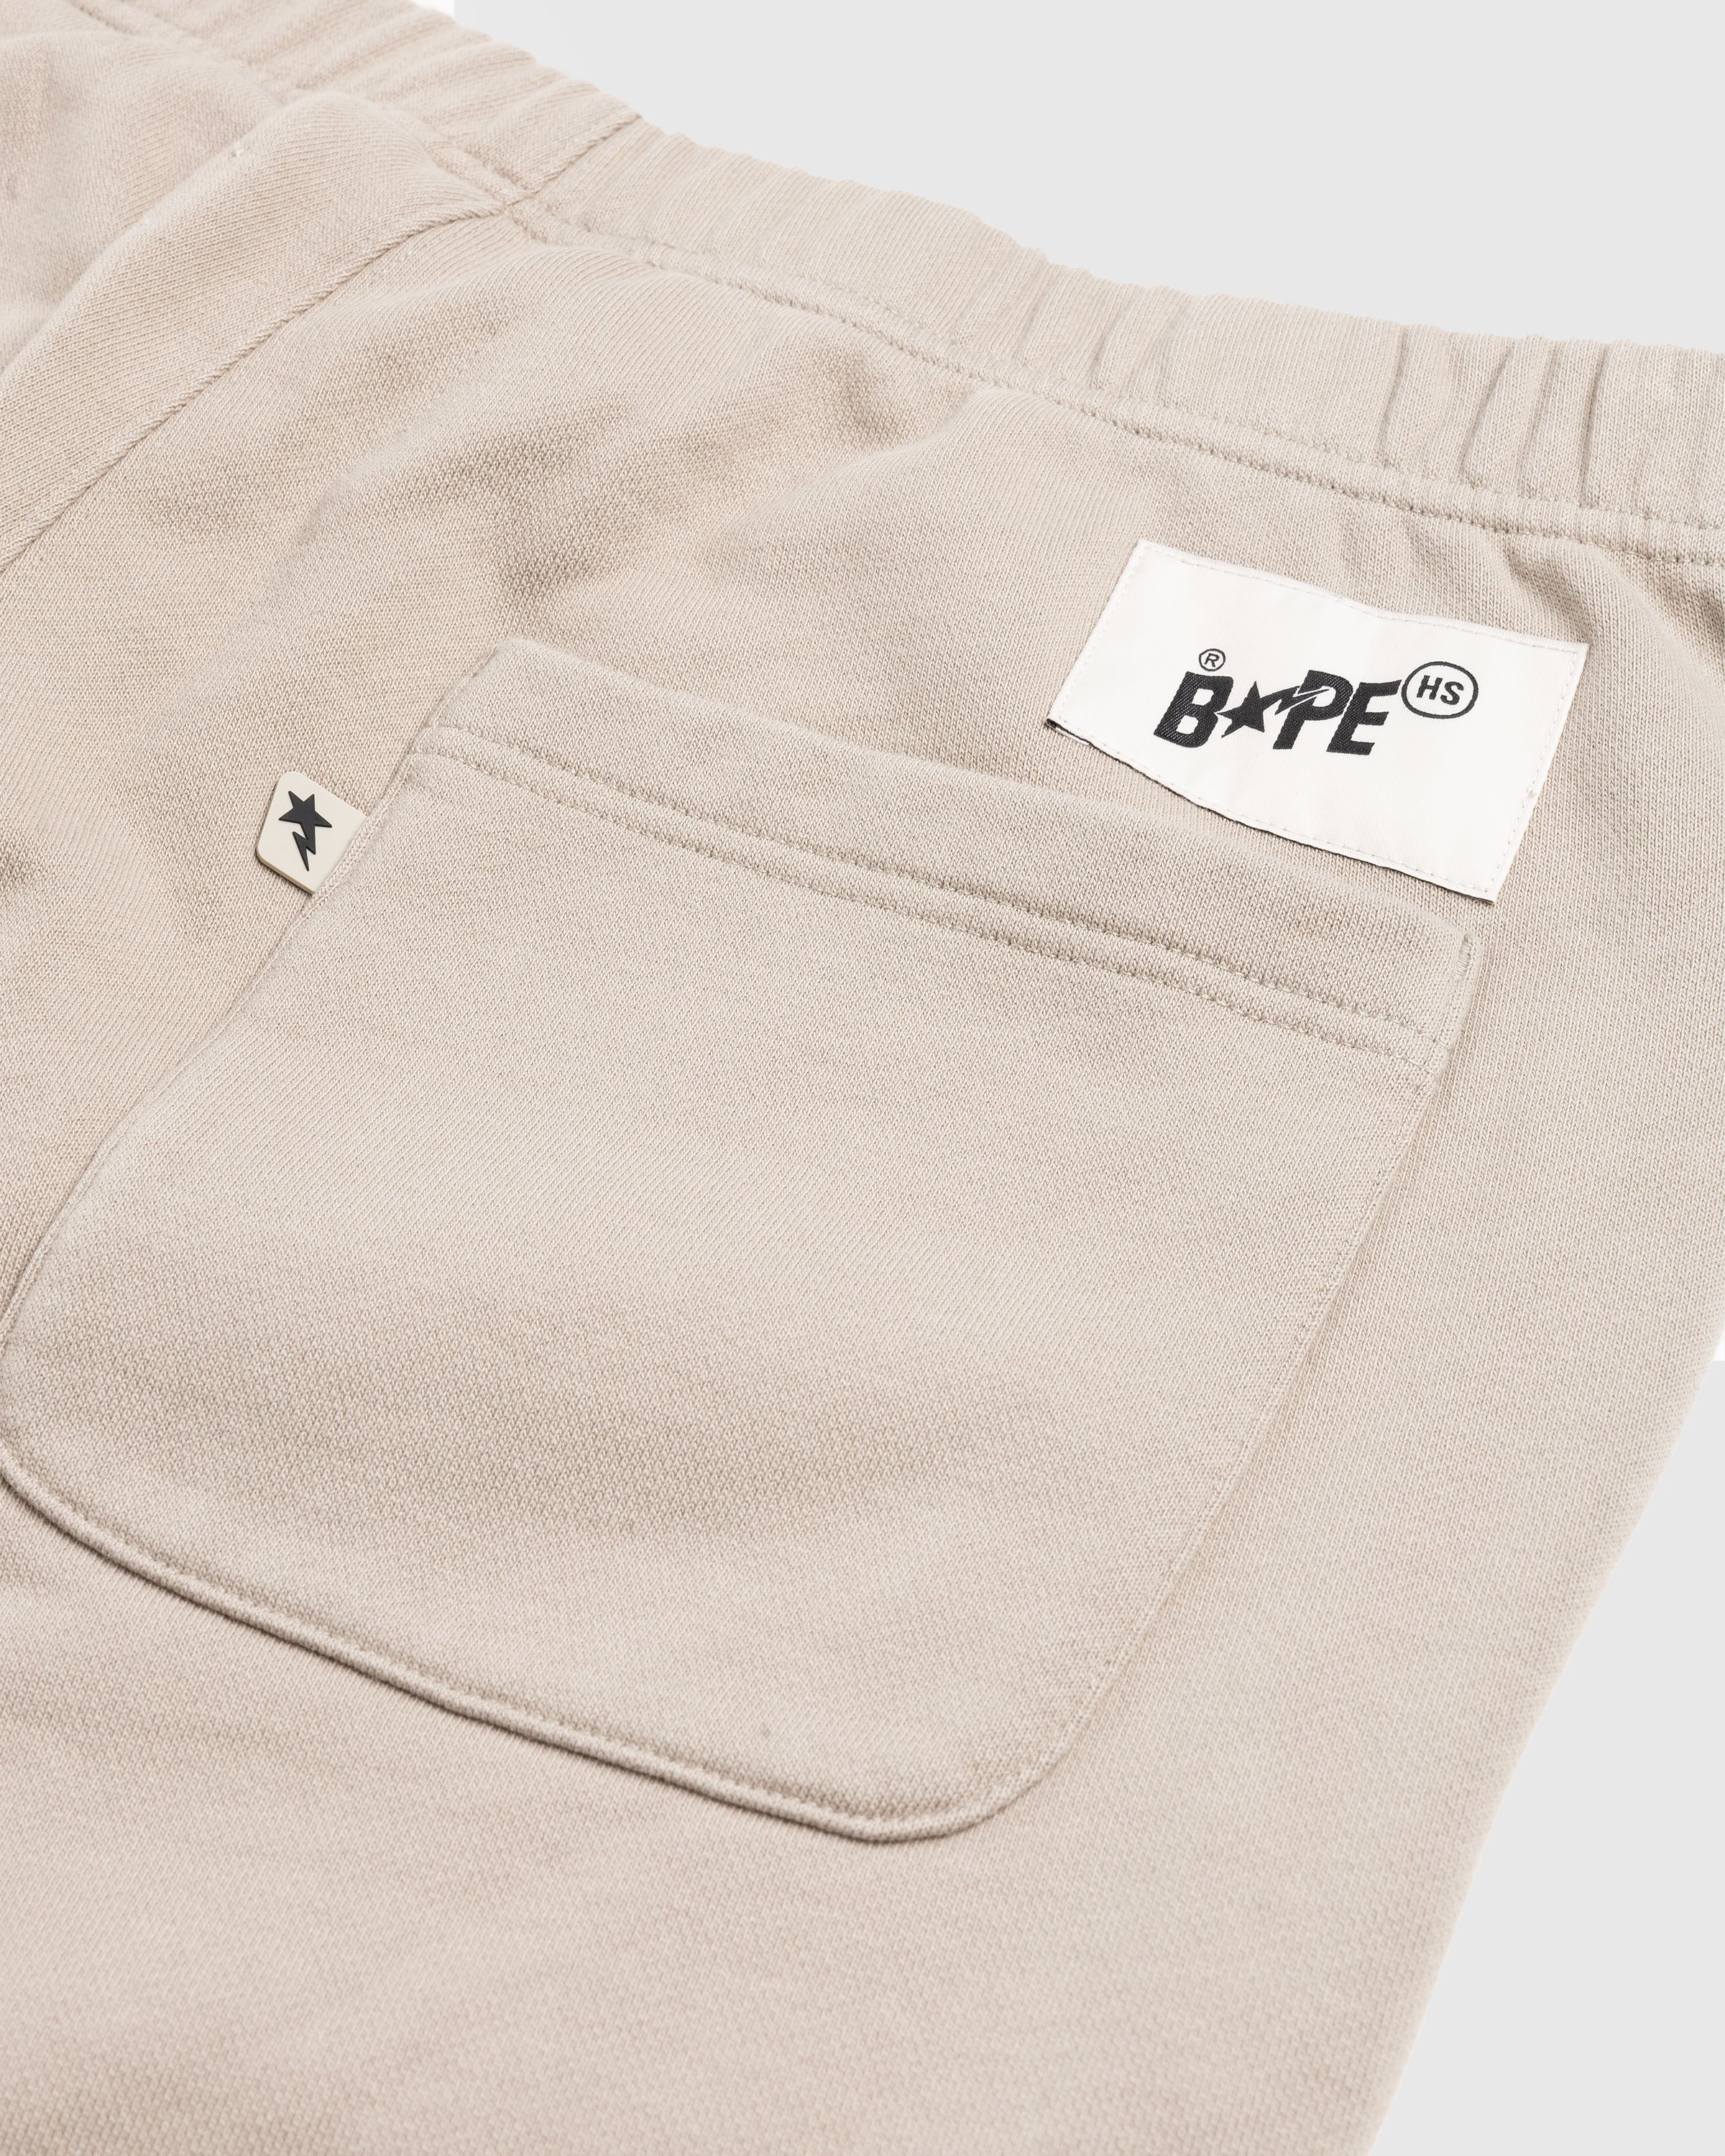 BAPE x Highsnobiety - Heavy Washed Sweat Pants Beige - Clothing - Beige - Image 6